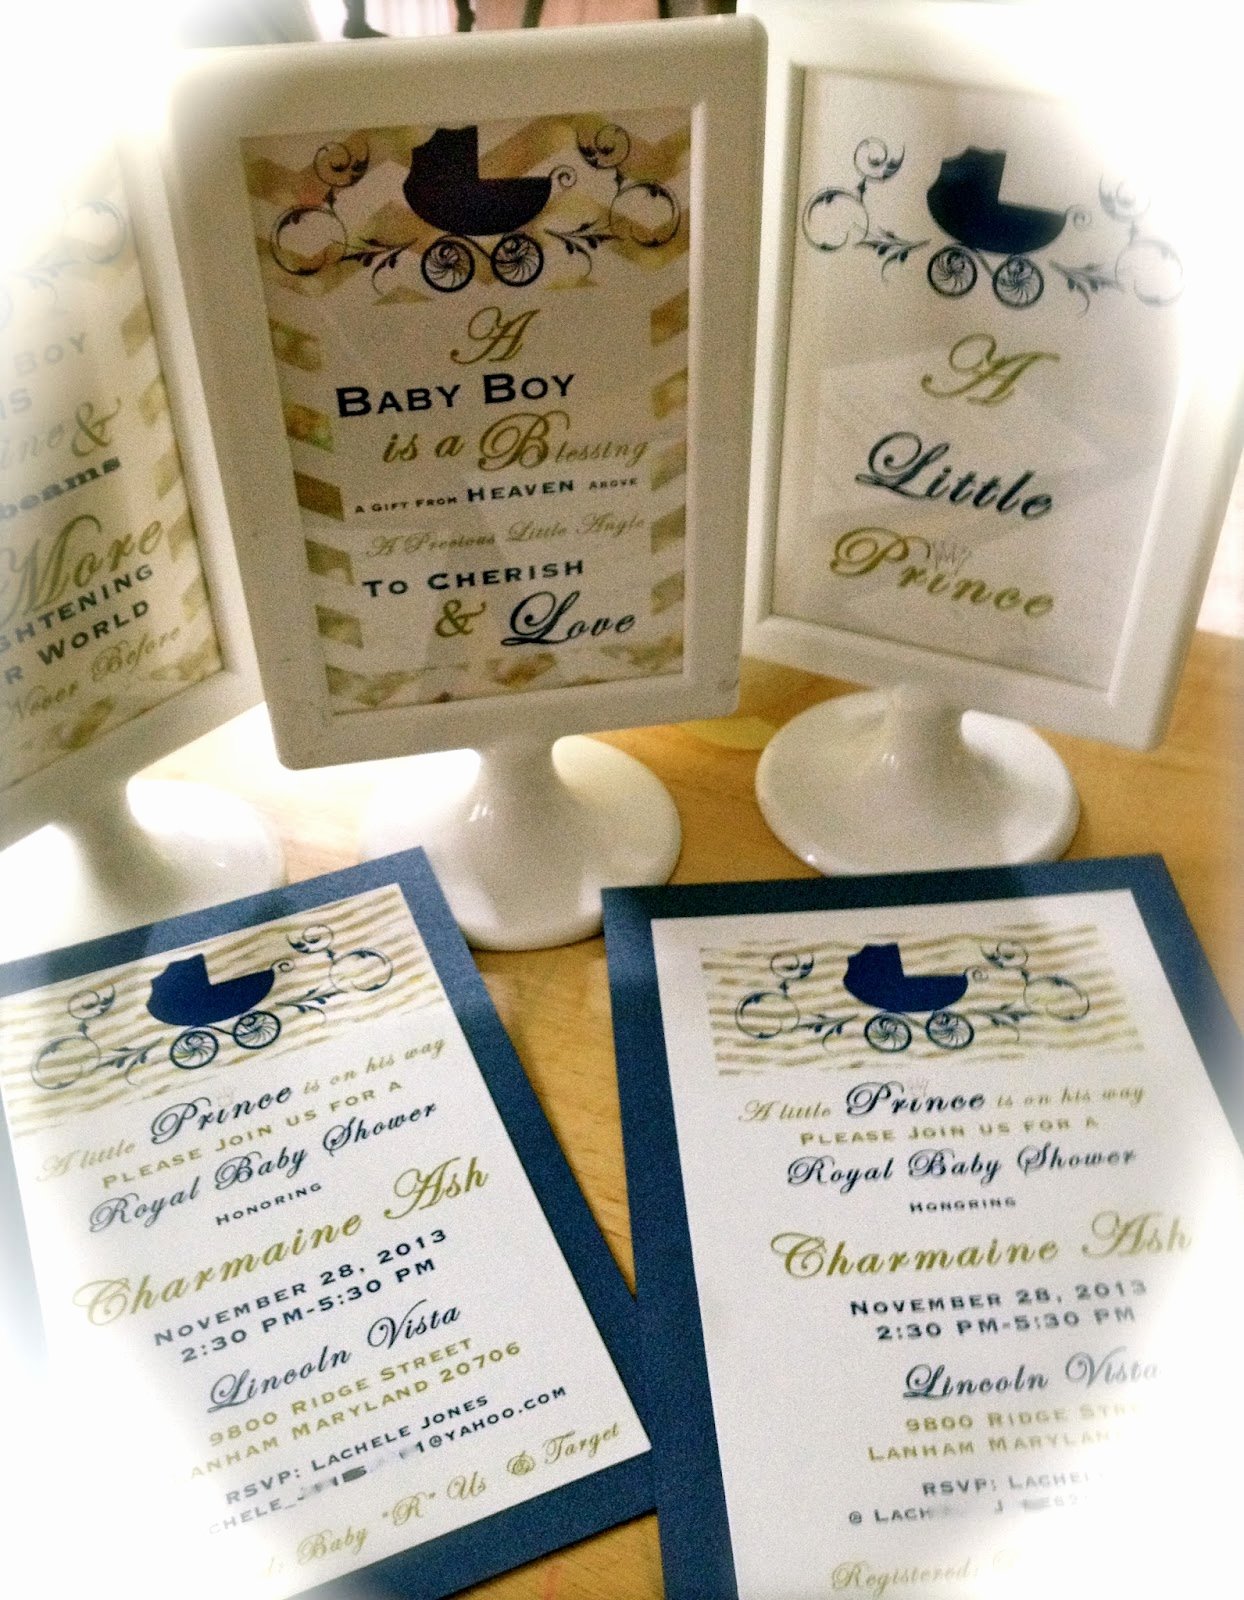 Royal Baby Shower Invitations Elegant Enchanted Expectations Royal Baby Shower Invitation